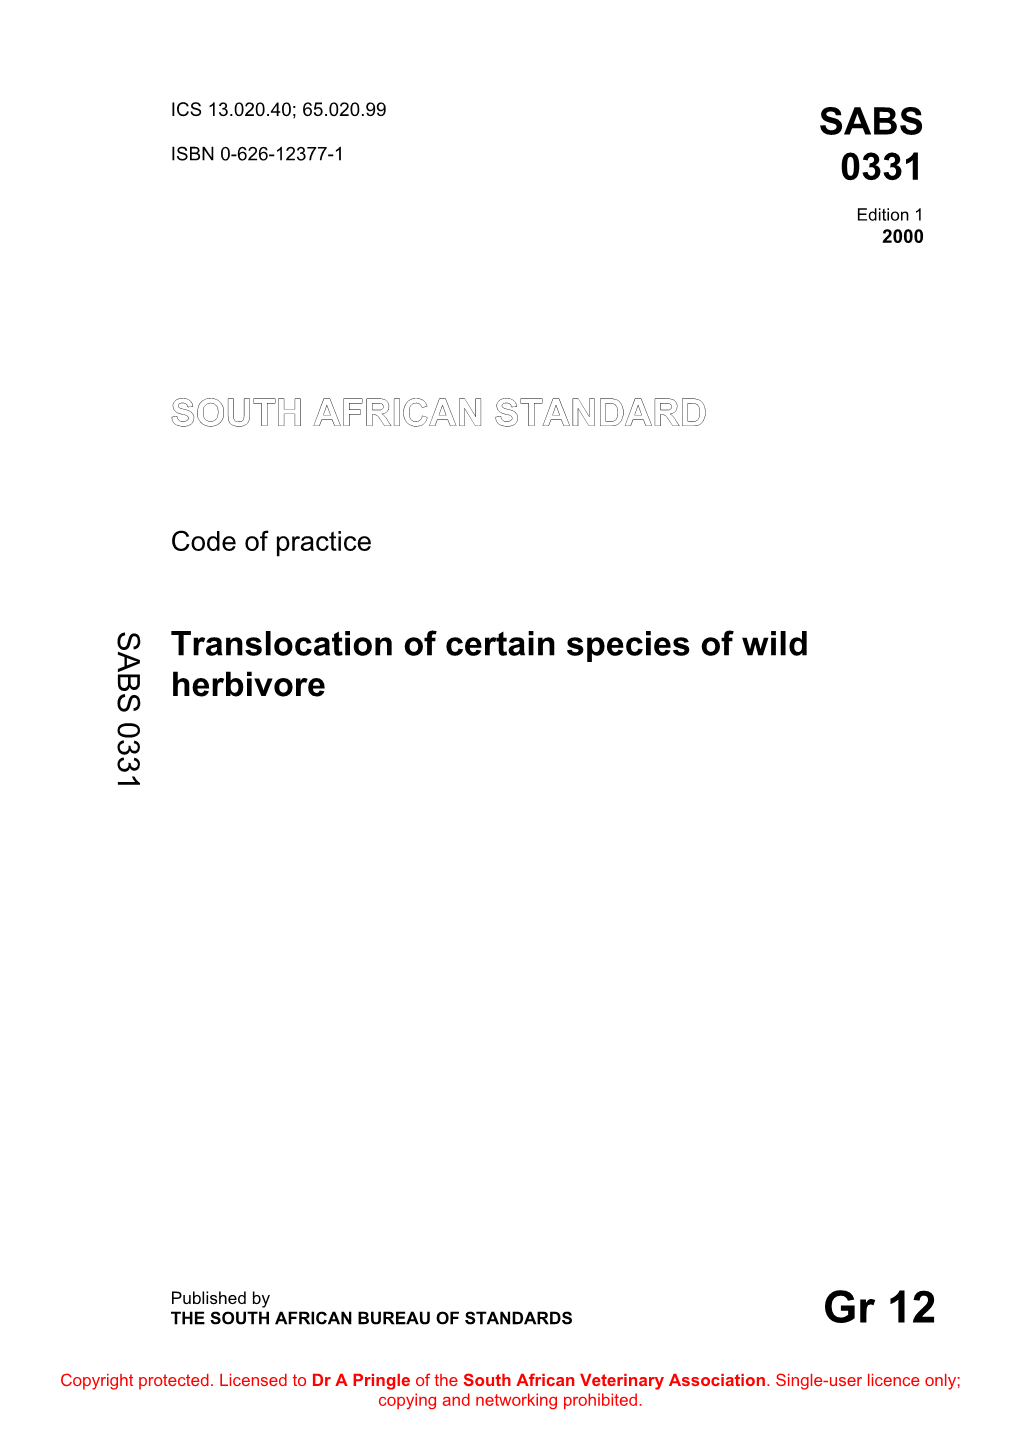 Translocation of Certain Species of Wild Herbivore